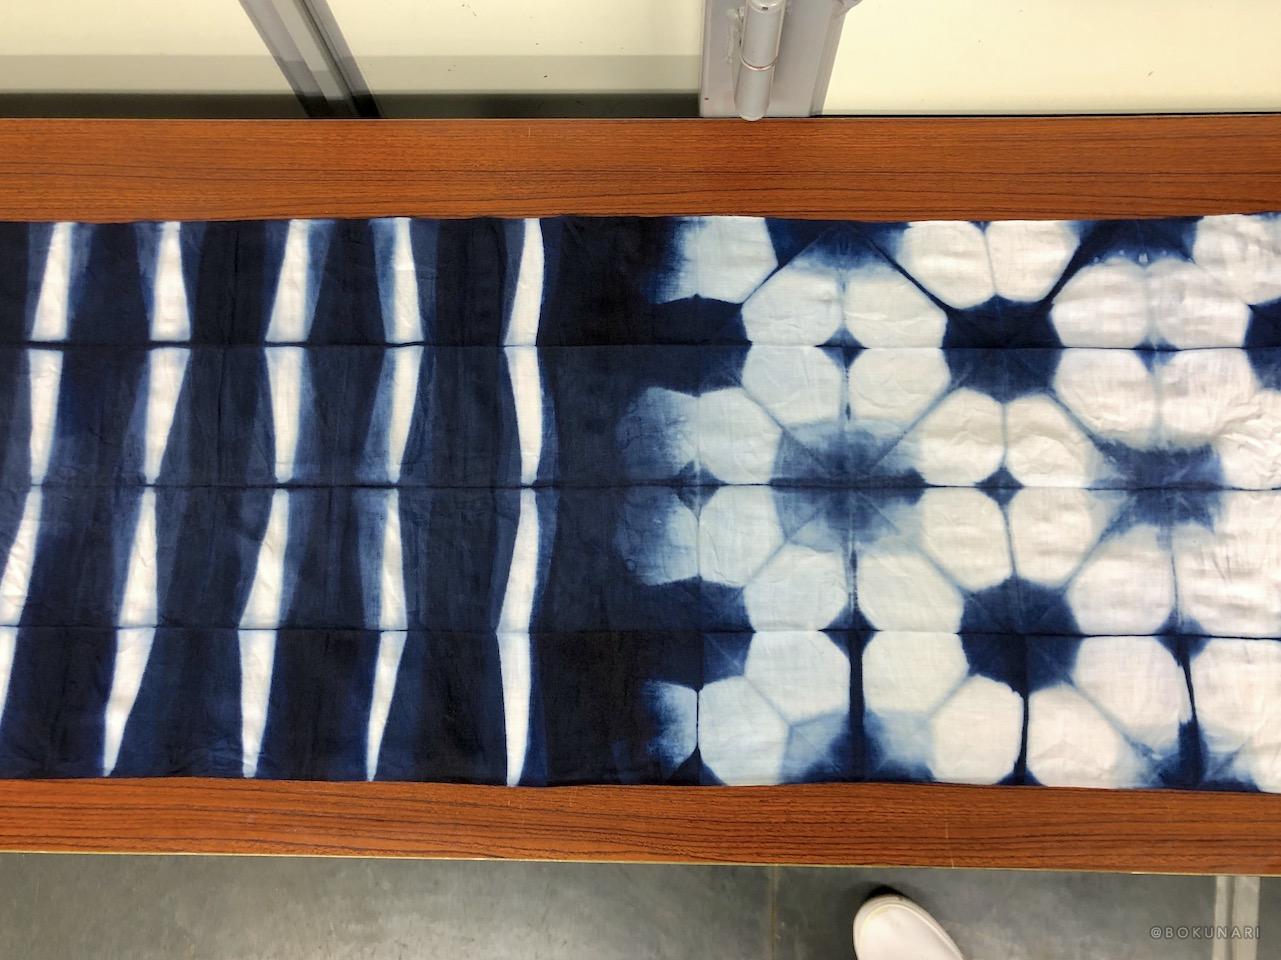 絞り染めの技法の一種で、折りたたんだ布をいろいろな形の板ではさみ、防染（挟んだ部分が染まらないよにする）をして模様を表現する技法が「板締め」です。